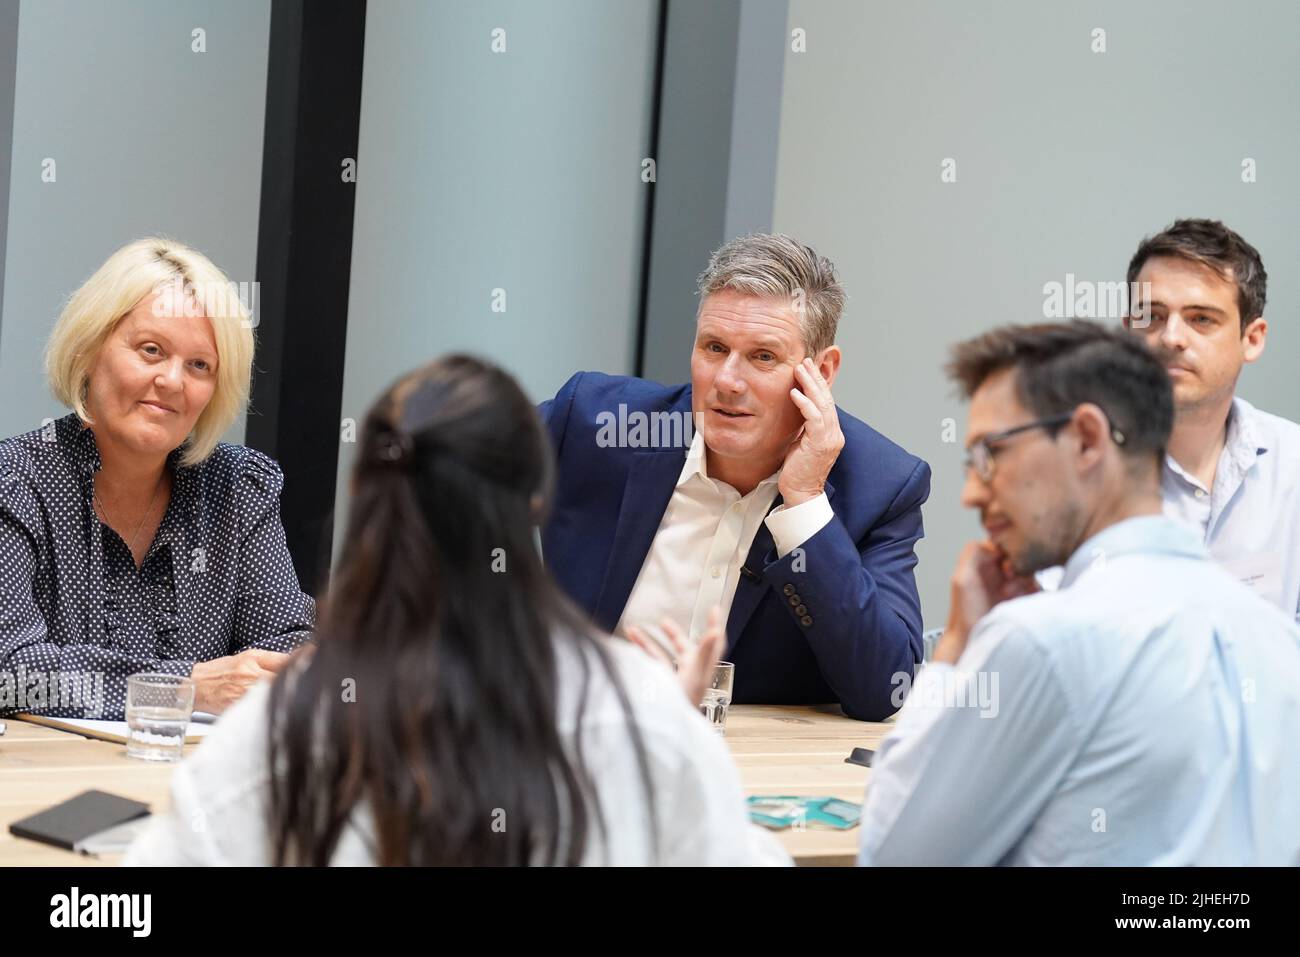 Der Arbeitsleiter Sir Keir Starmer mit Alison Rose, dem Vorstandsvorsitzenden der NatWest Group, am NatWest-Hauptsitz im Zentrum von London, um eine Gruppe junger Unternehmer und Unternehmer zu treffen. Bilddatum: Montag, 18. Juli 2022. Stockfoto